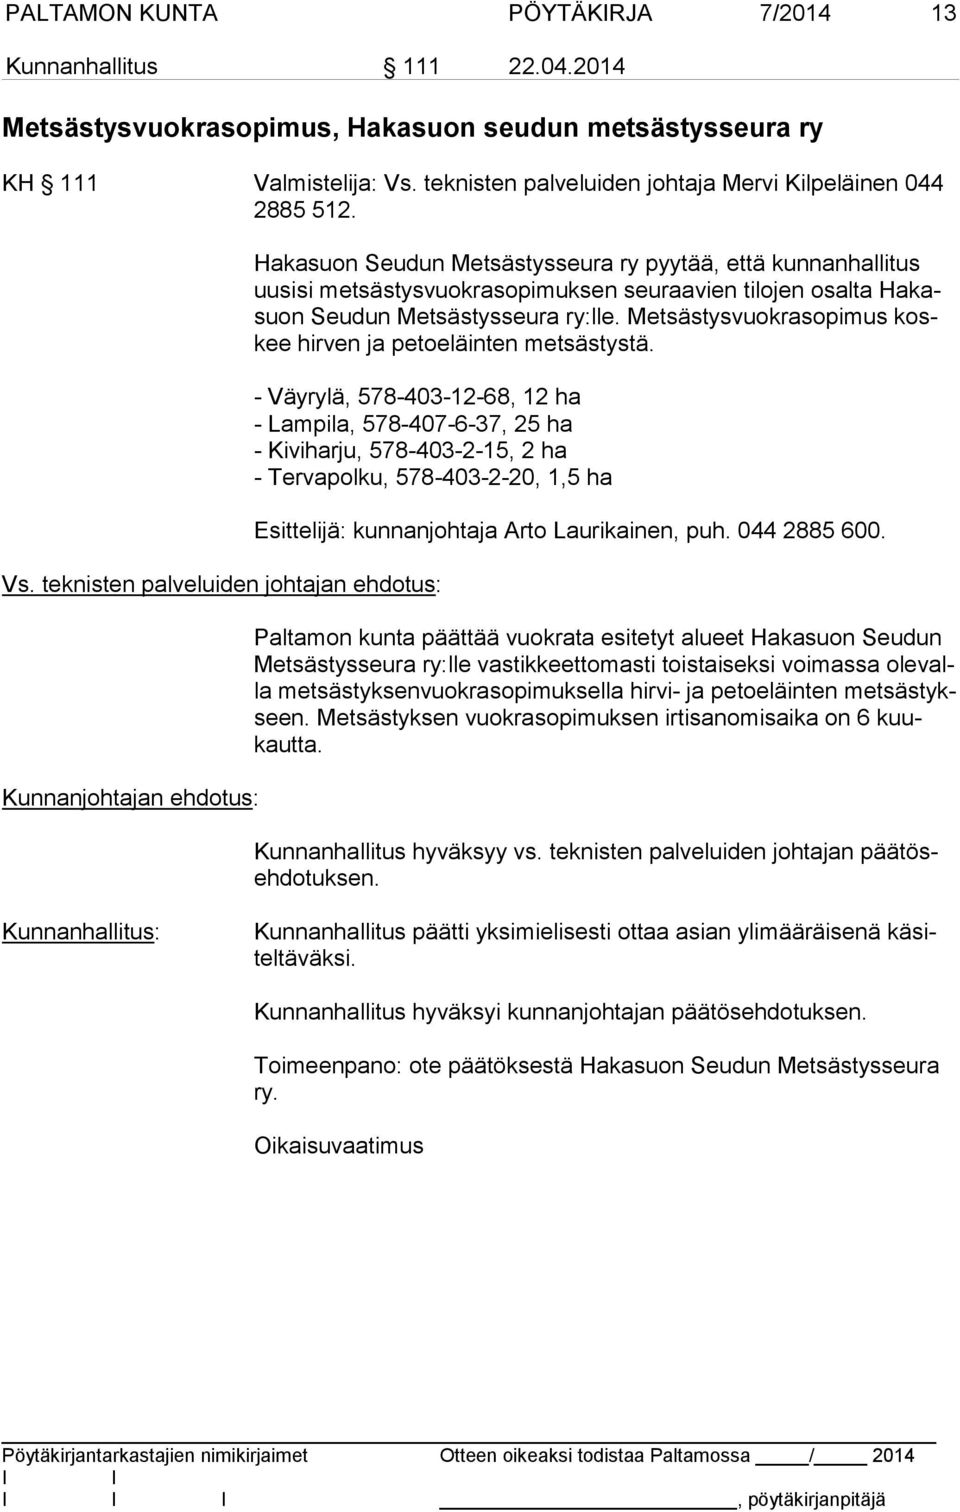 Hakasuon Seudun Metsästysseura ry pyytää, että kunnanhallitus uu si si metsästysvuokrasopimuksen seuraavien tilojen osalta Ha kasuon Seudun Metsästysseura ry:lle.